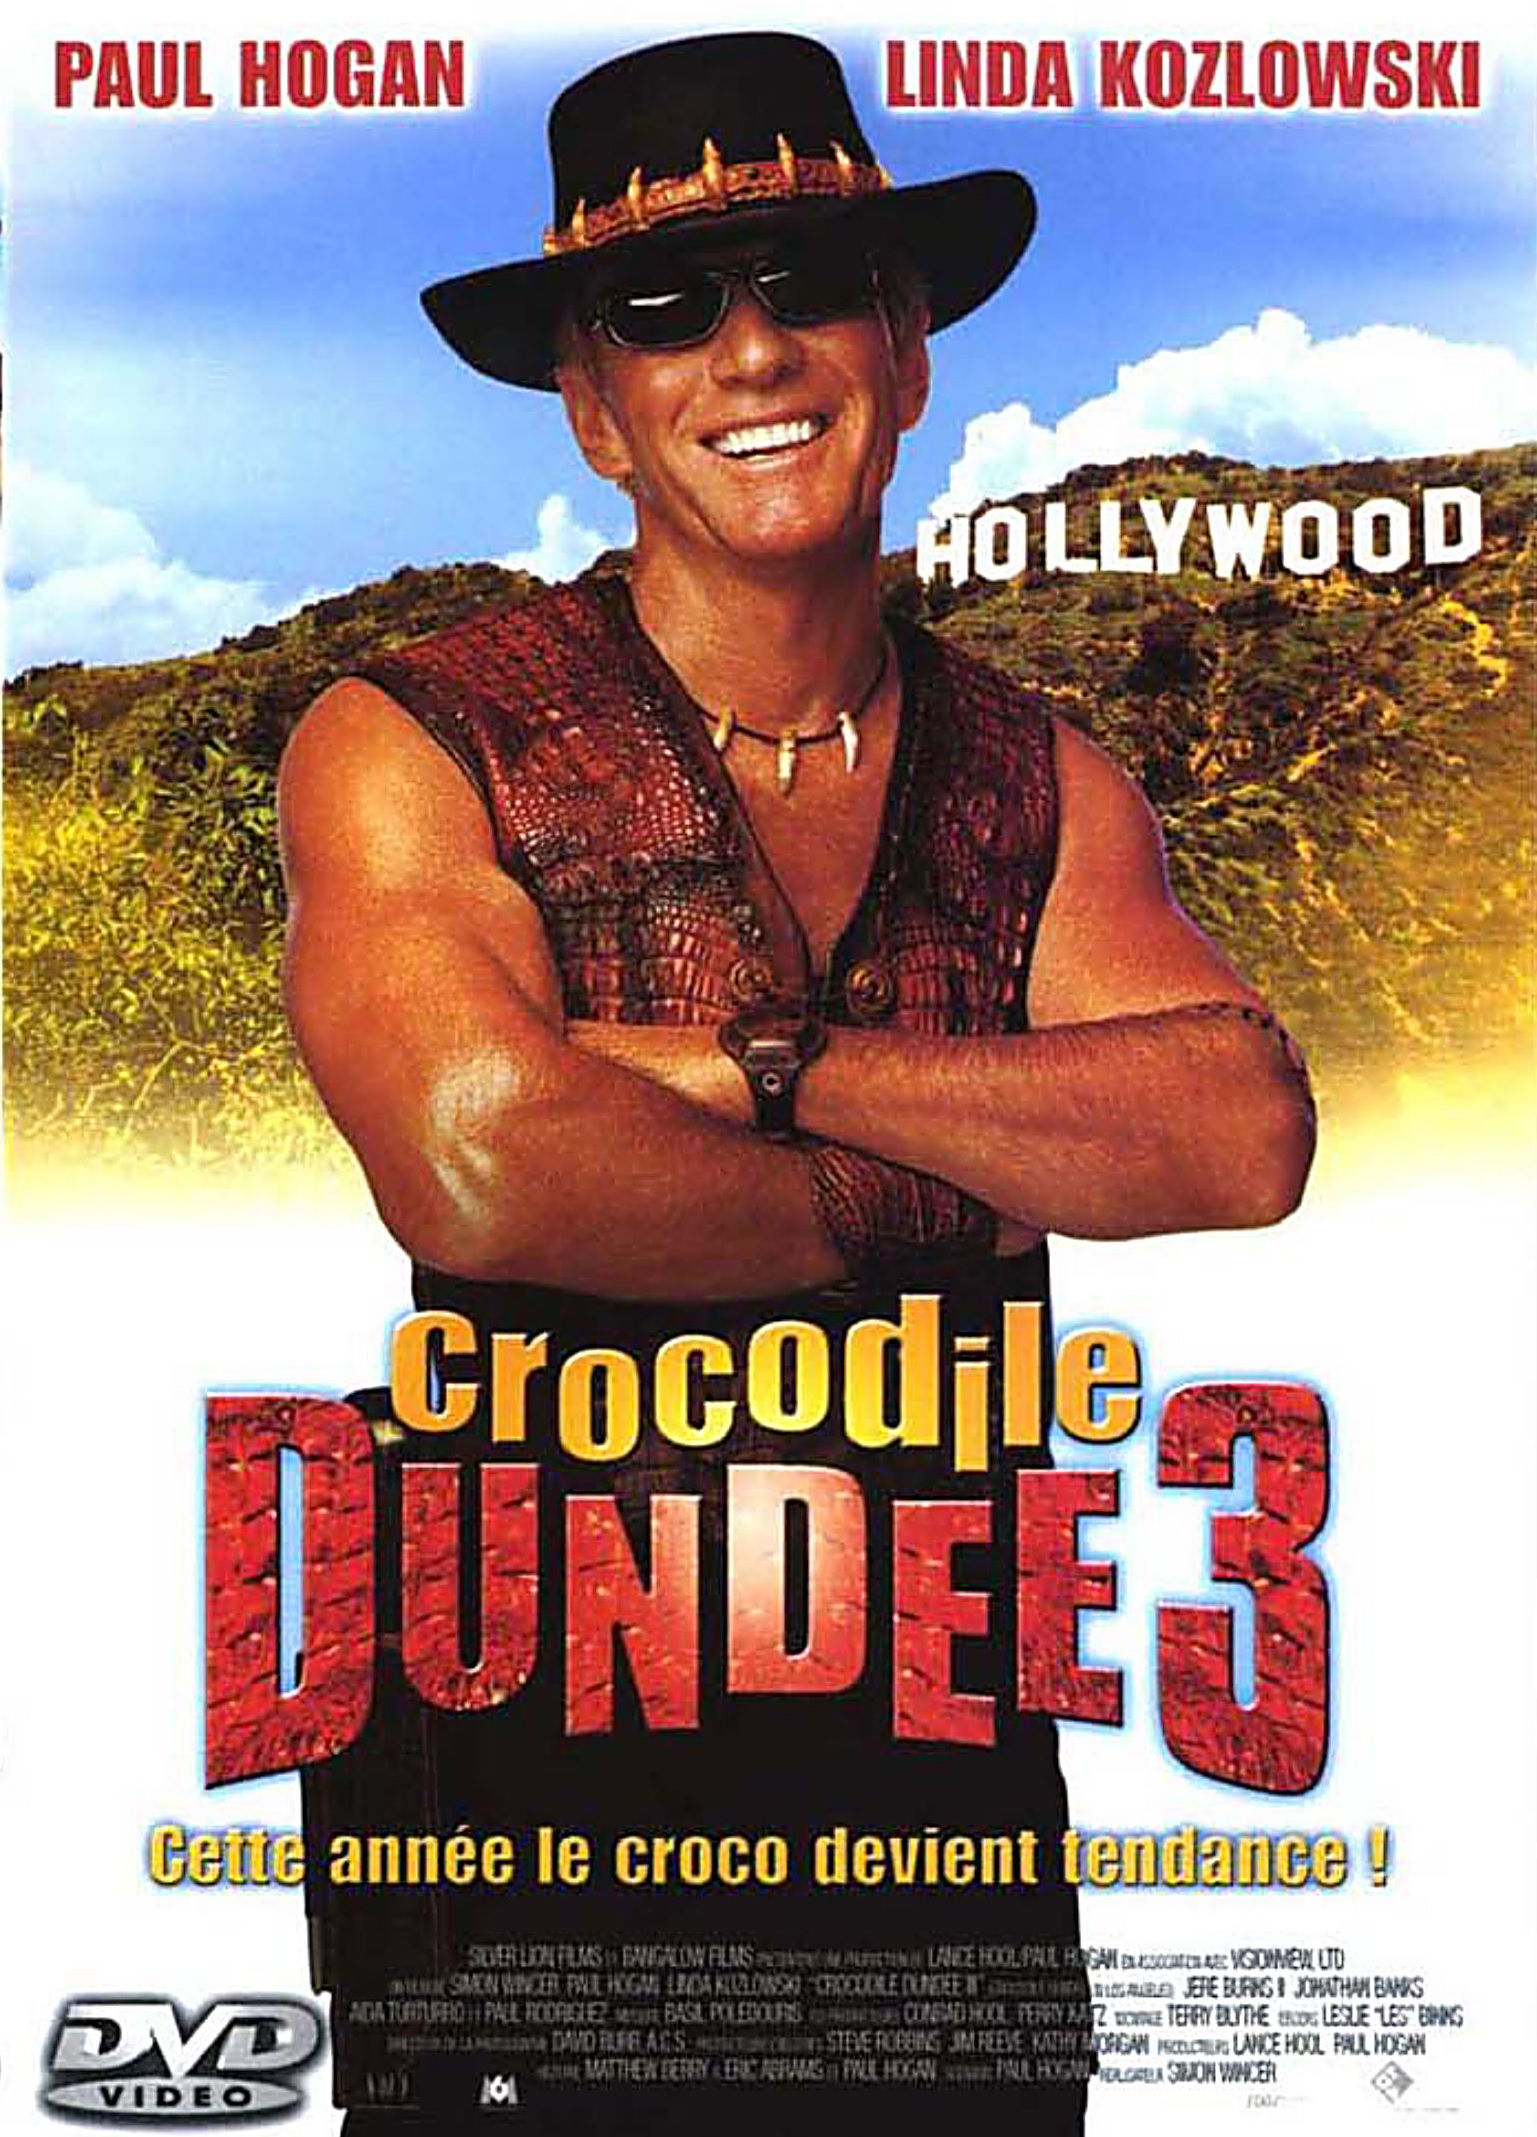 Крокодил данди 2 3. Крокодил Данди в Лос-Анджелесе 2001. Крокодил Данди в Лос-Анджелесе.2001. Постер. Данди по прозвищу крокодил 3. Пол Хоган крокодил Данди 2001.